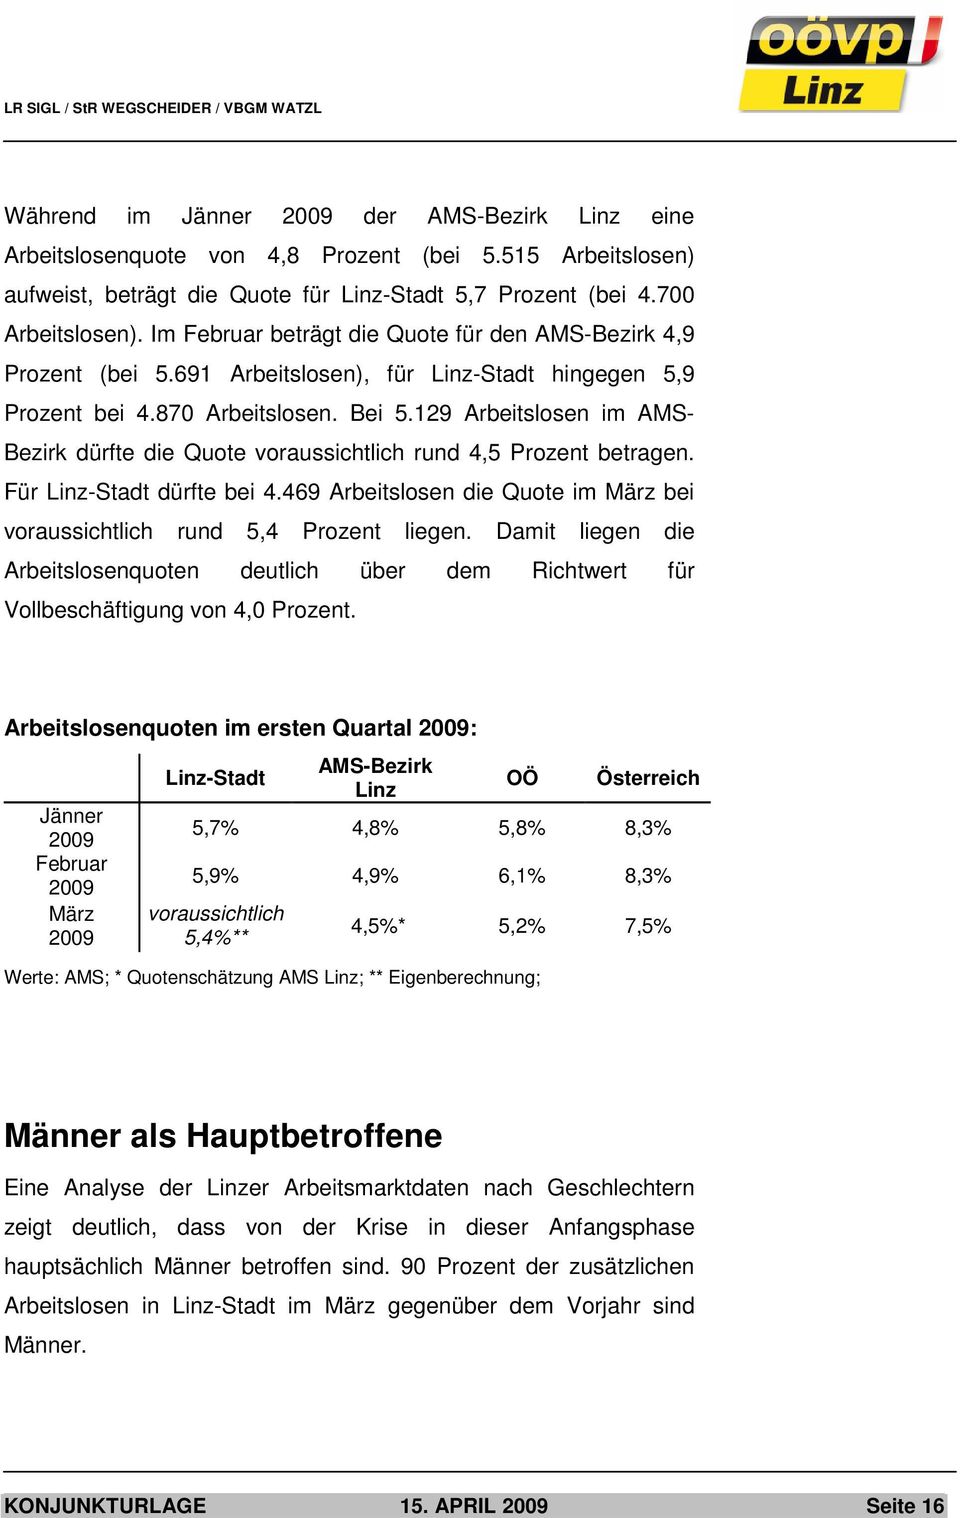 129 Arbeitslosen im AMS- Bezirk dürfte die Quote voraussichtlich rund 4,5 Prozent betragen. Für Linz-Stadt dürfte bei 4.469 Arbeitslosen die Quote im März bei voraussichtlich rund 5,4 Prozent liegen.